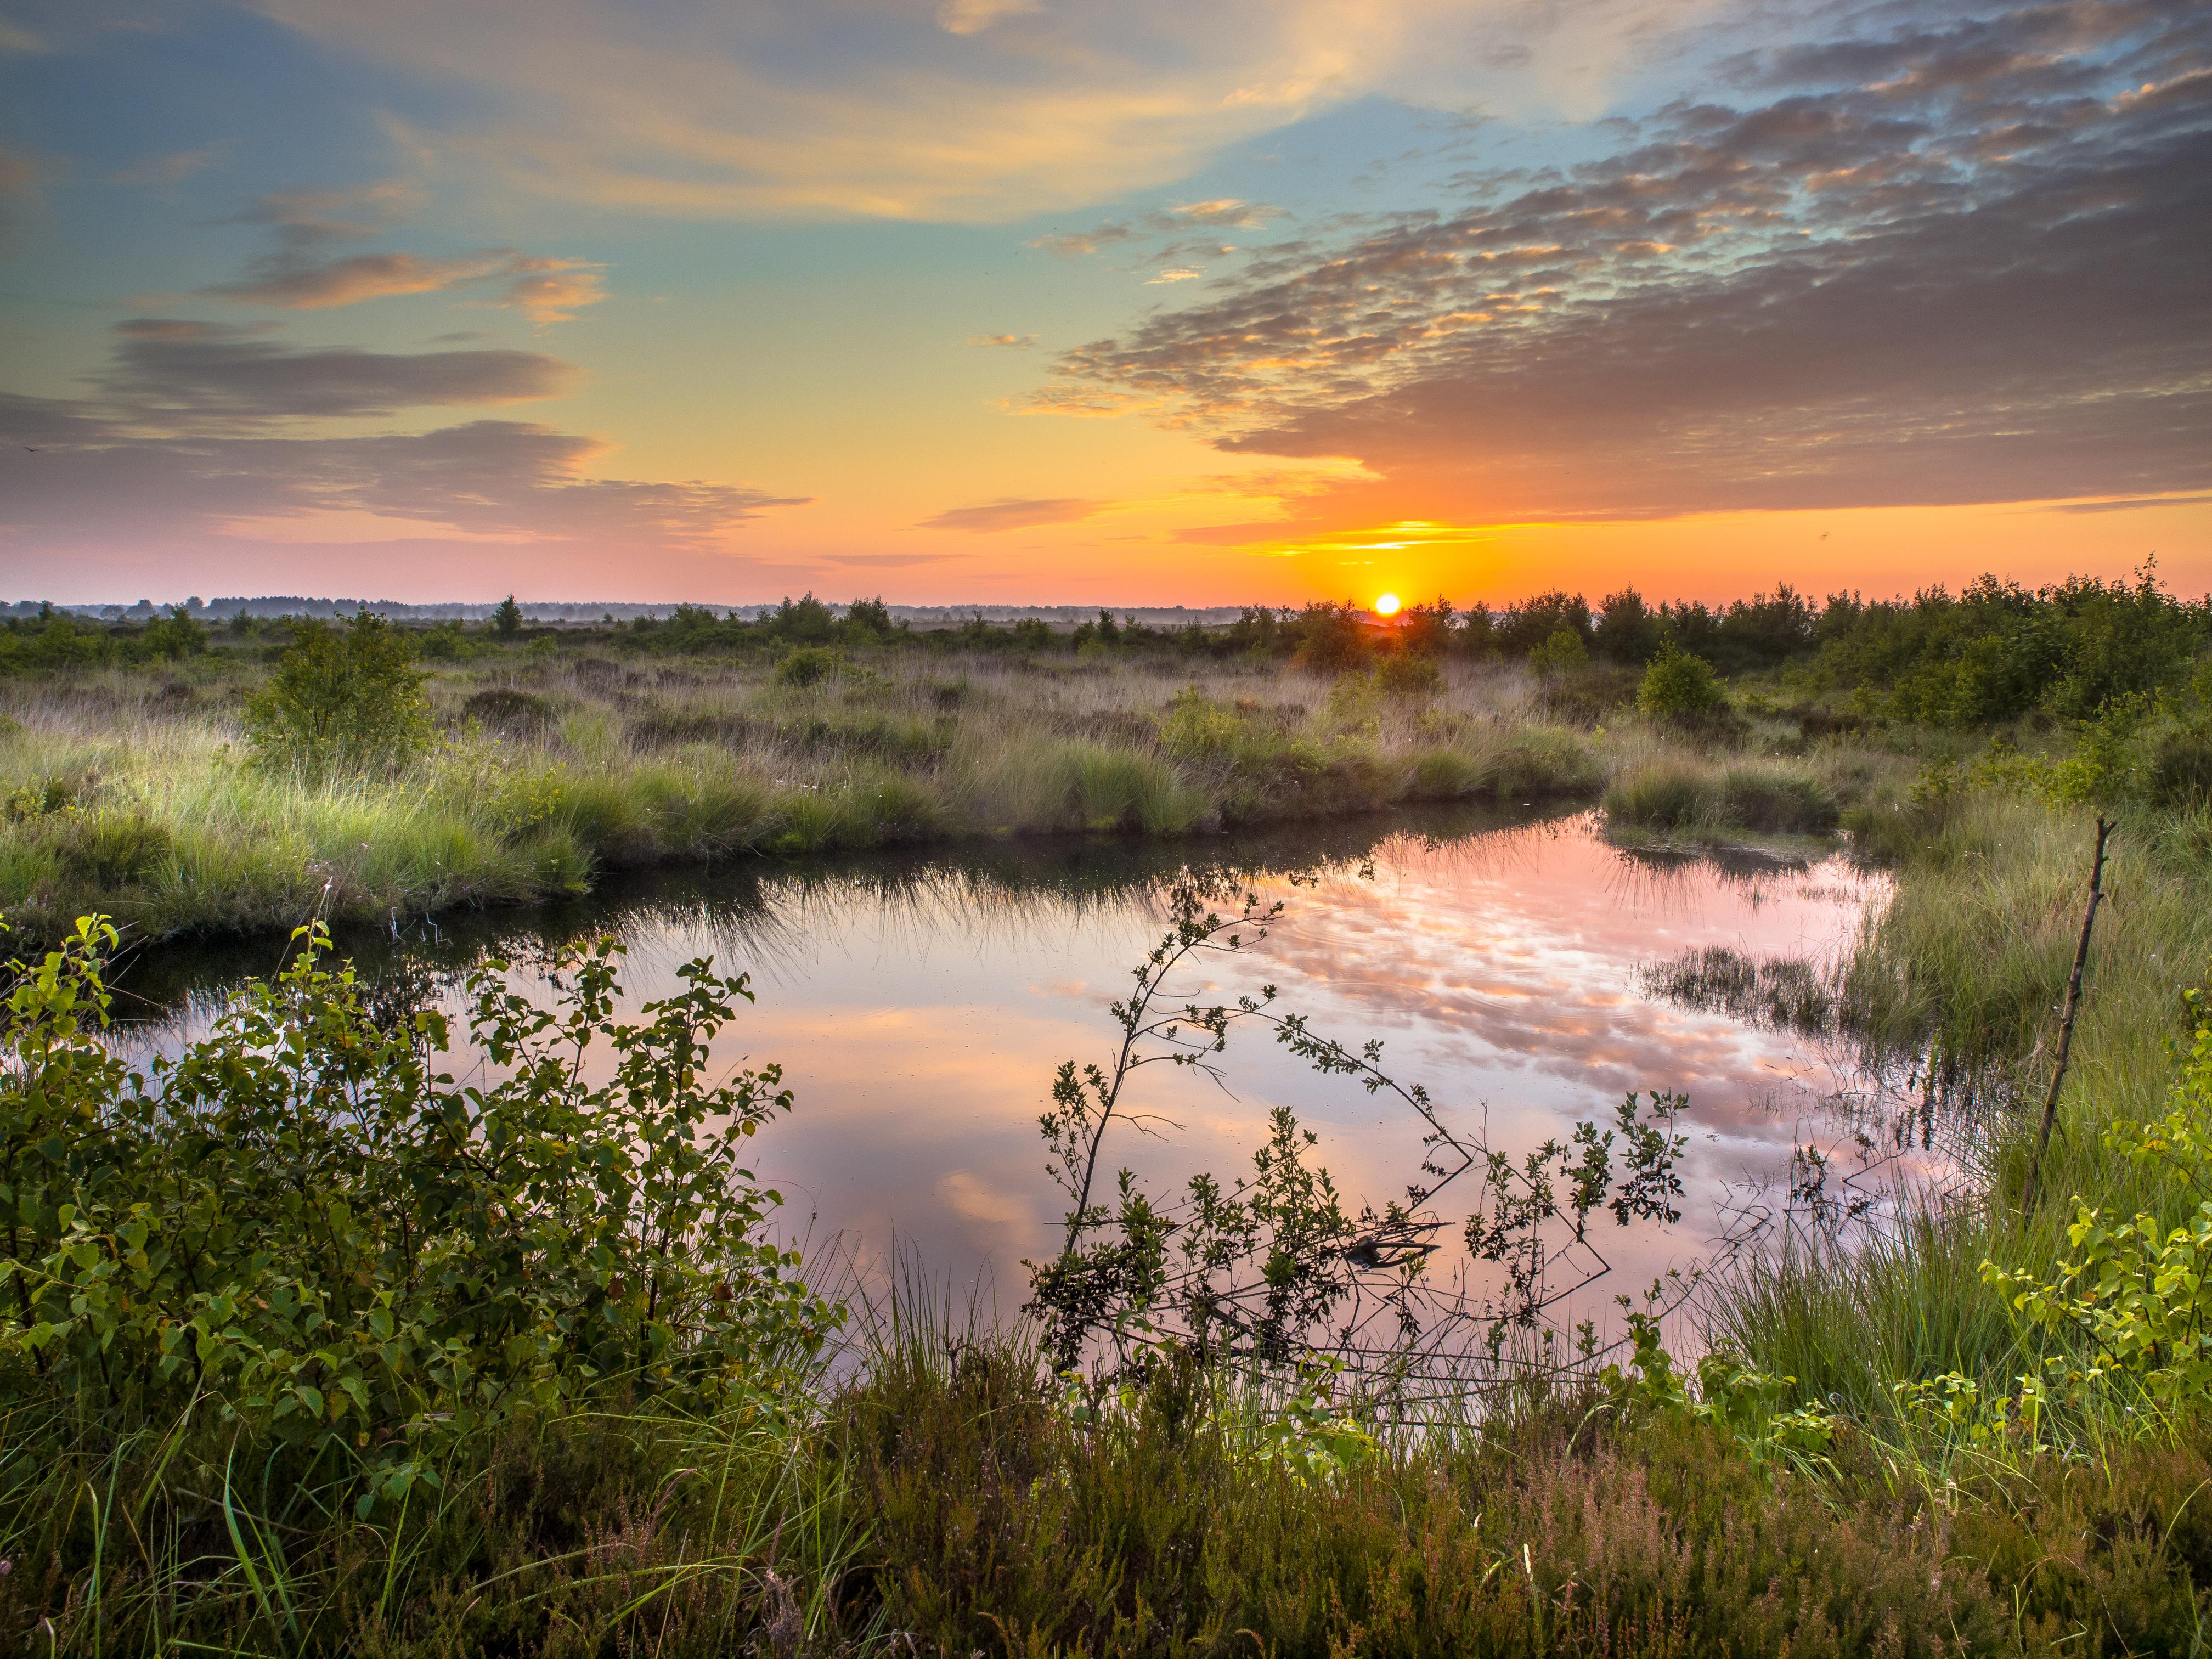 Sunrise over Fochteloerveen swamp nature reserve in Drenthe, the Netherlands